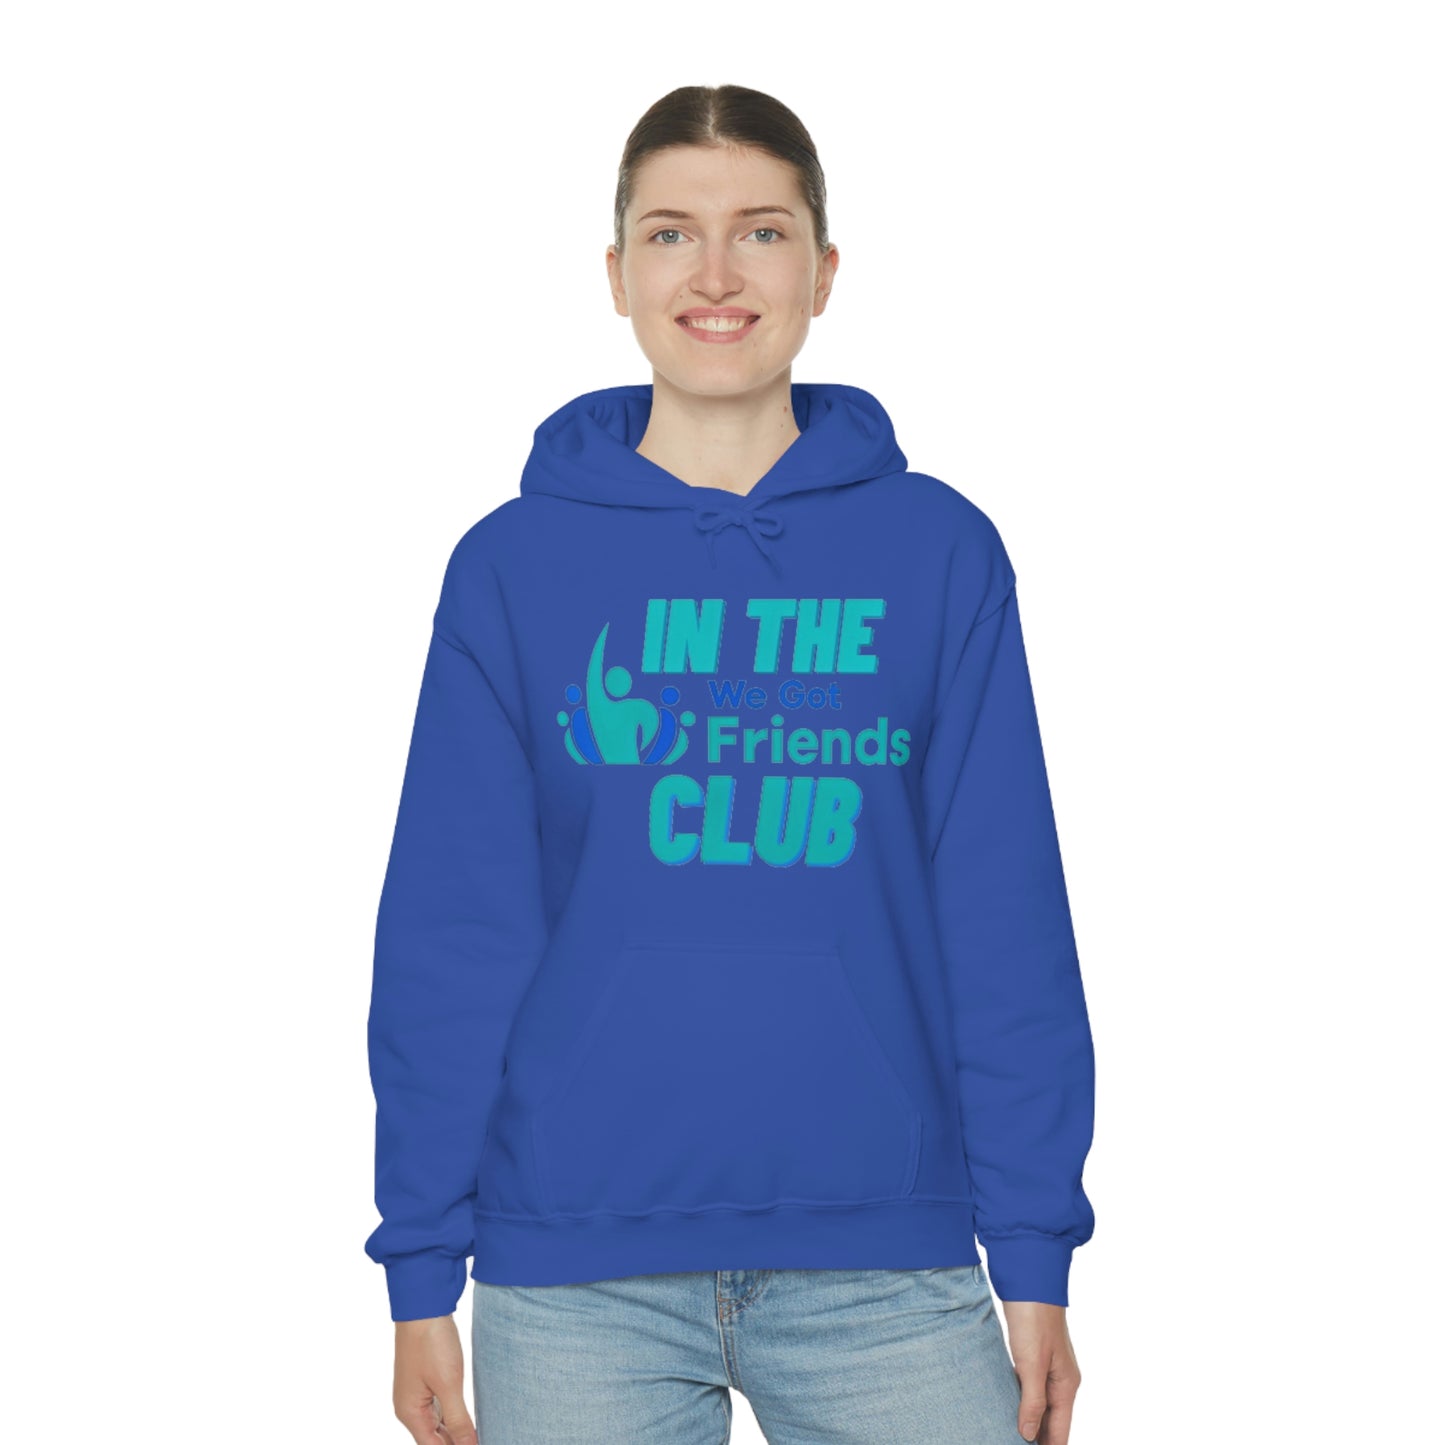 WE GOT FRIENDS IN THE CLUB Unisex Heavy Blend™ Hooded Sweatshirt